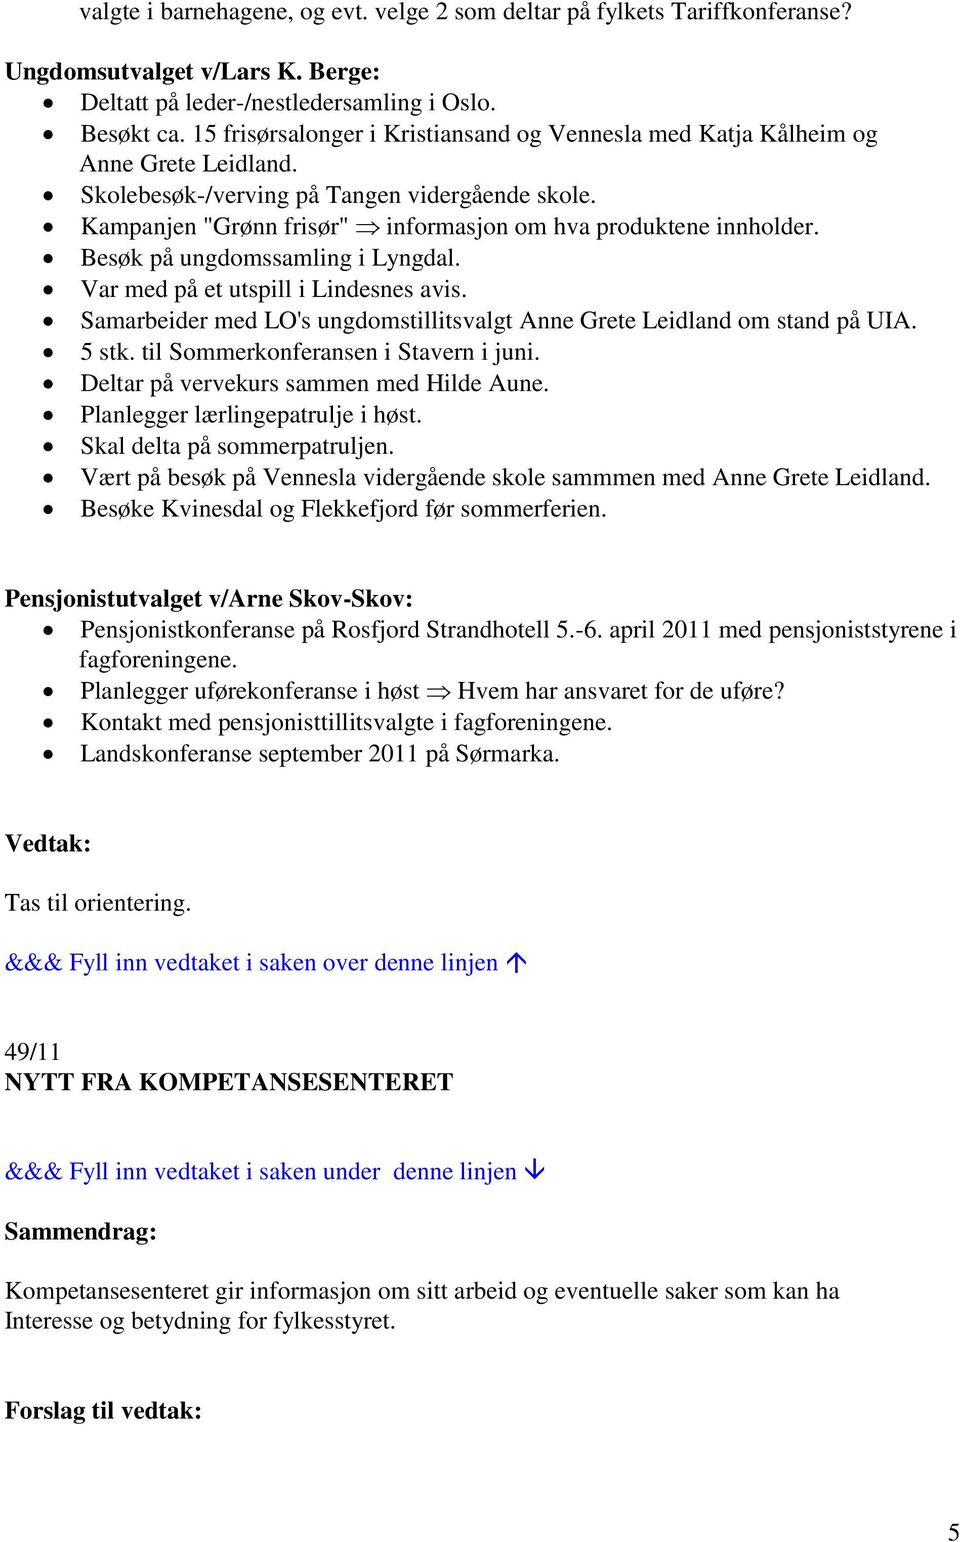 Kampanjen "Grønn frisør" informasjon om hva produktene innholder. Besøk på ungdomssamling i Lyngdal. Var med på et utspill i Lindesnes avis.